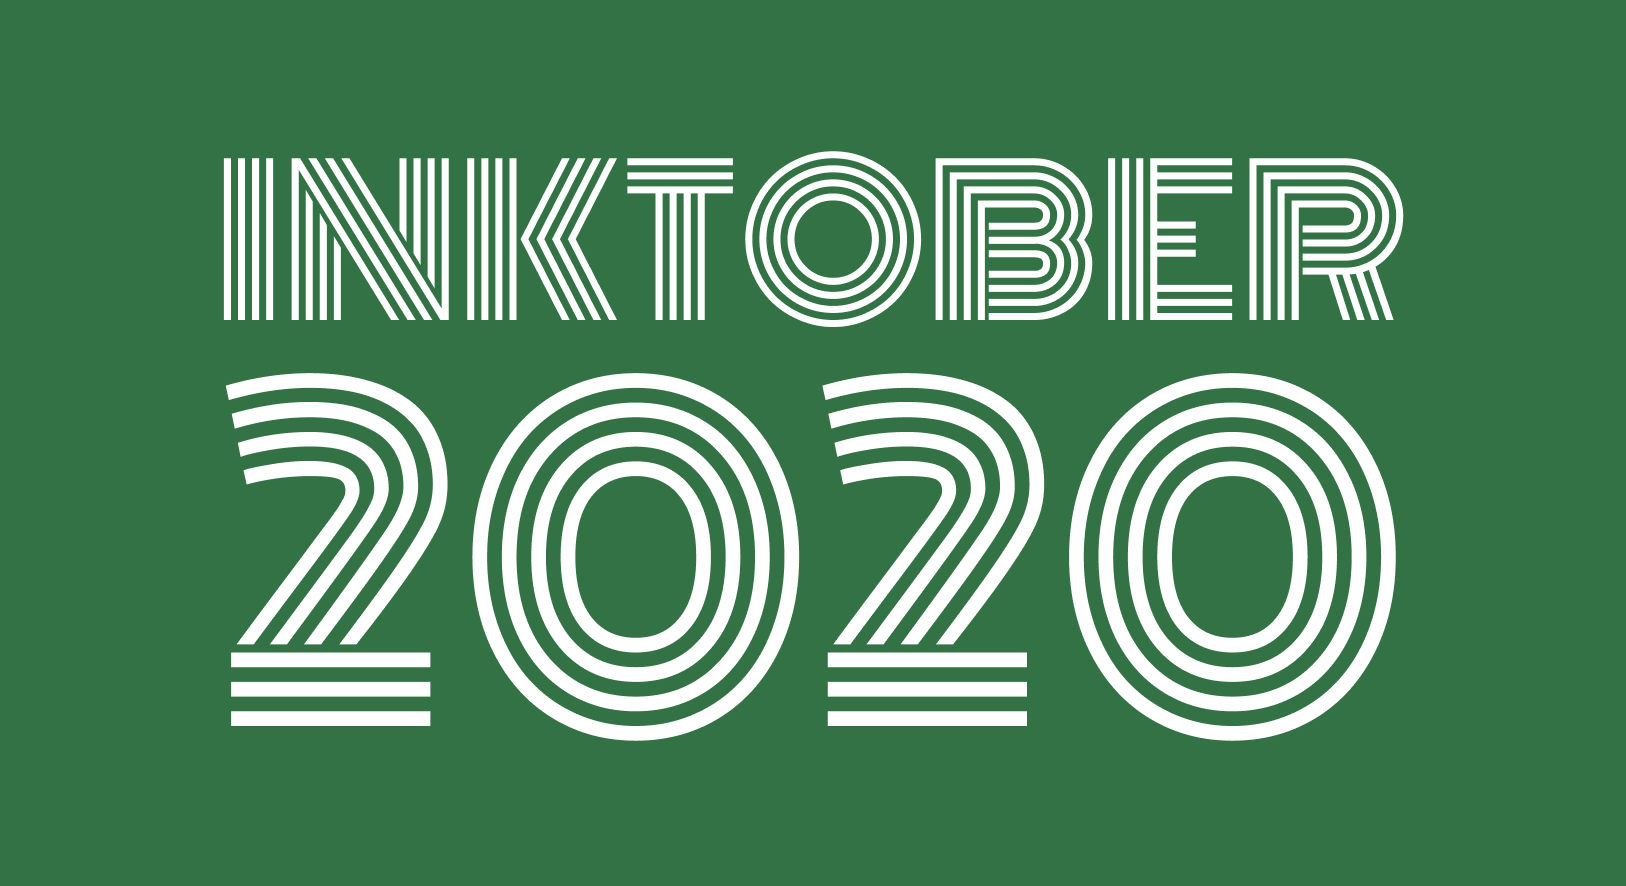 Inktober 2020: Plotter Edition